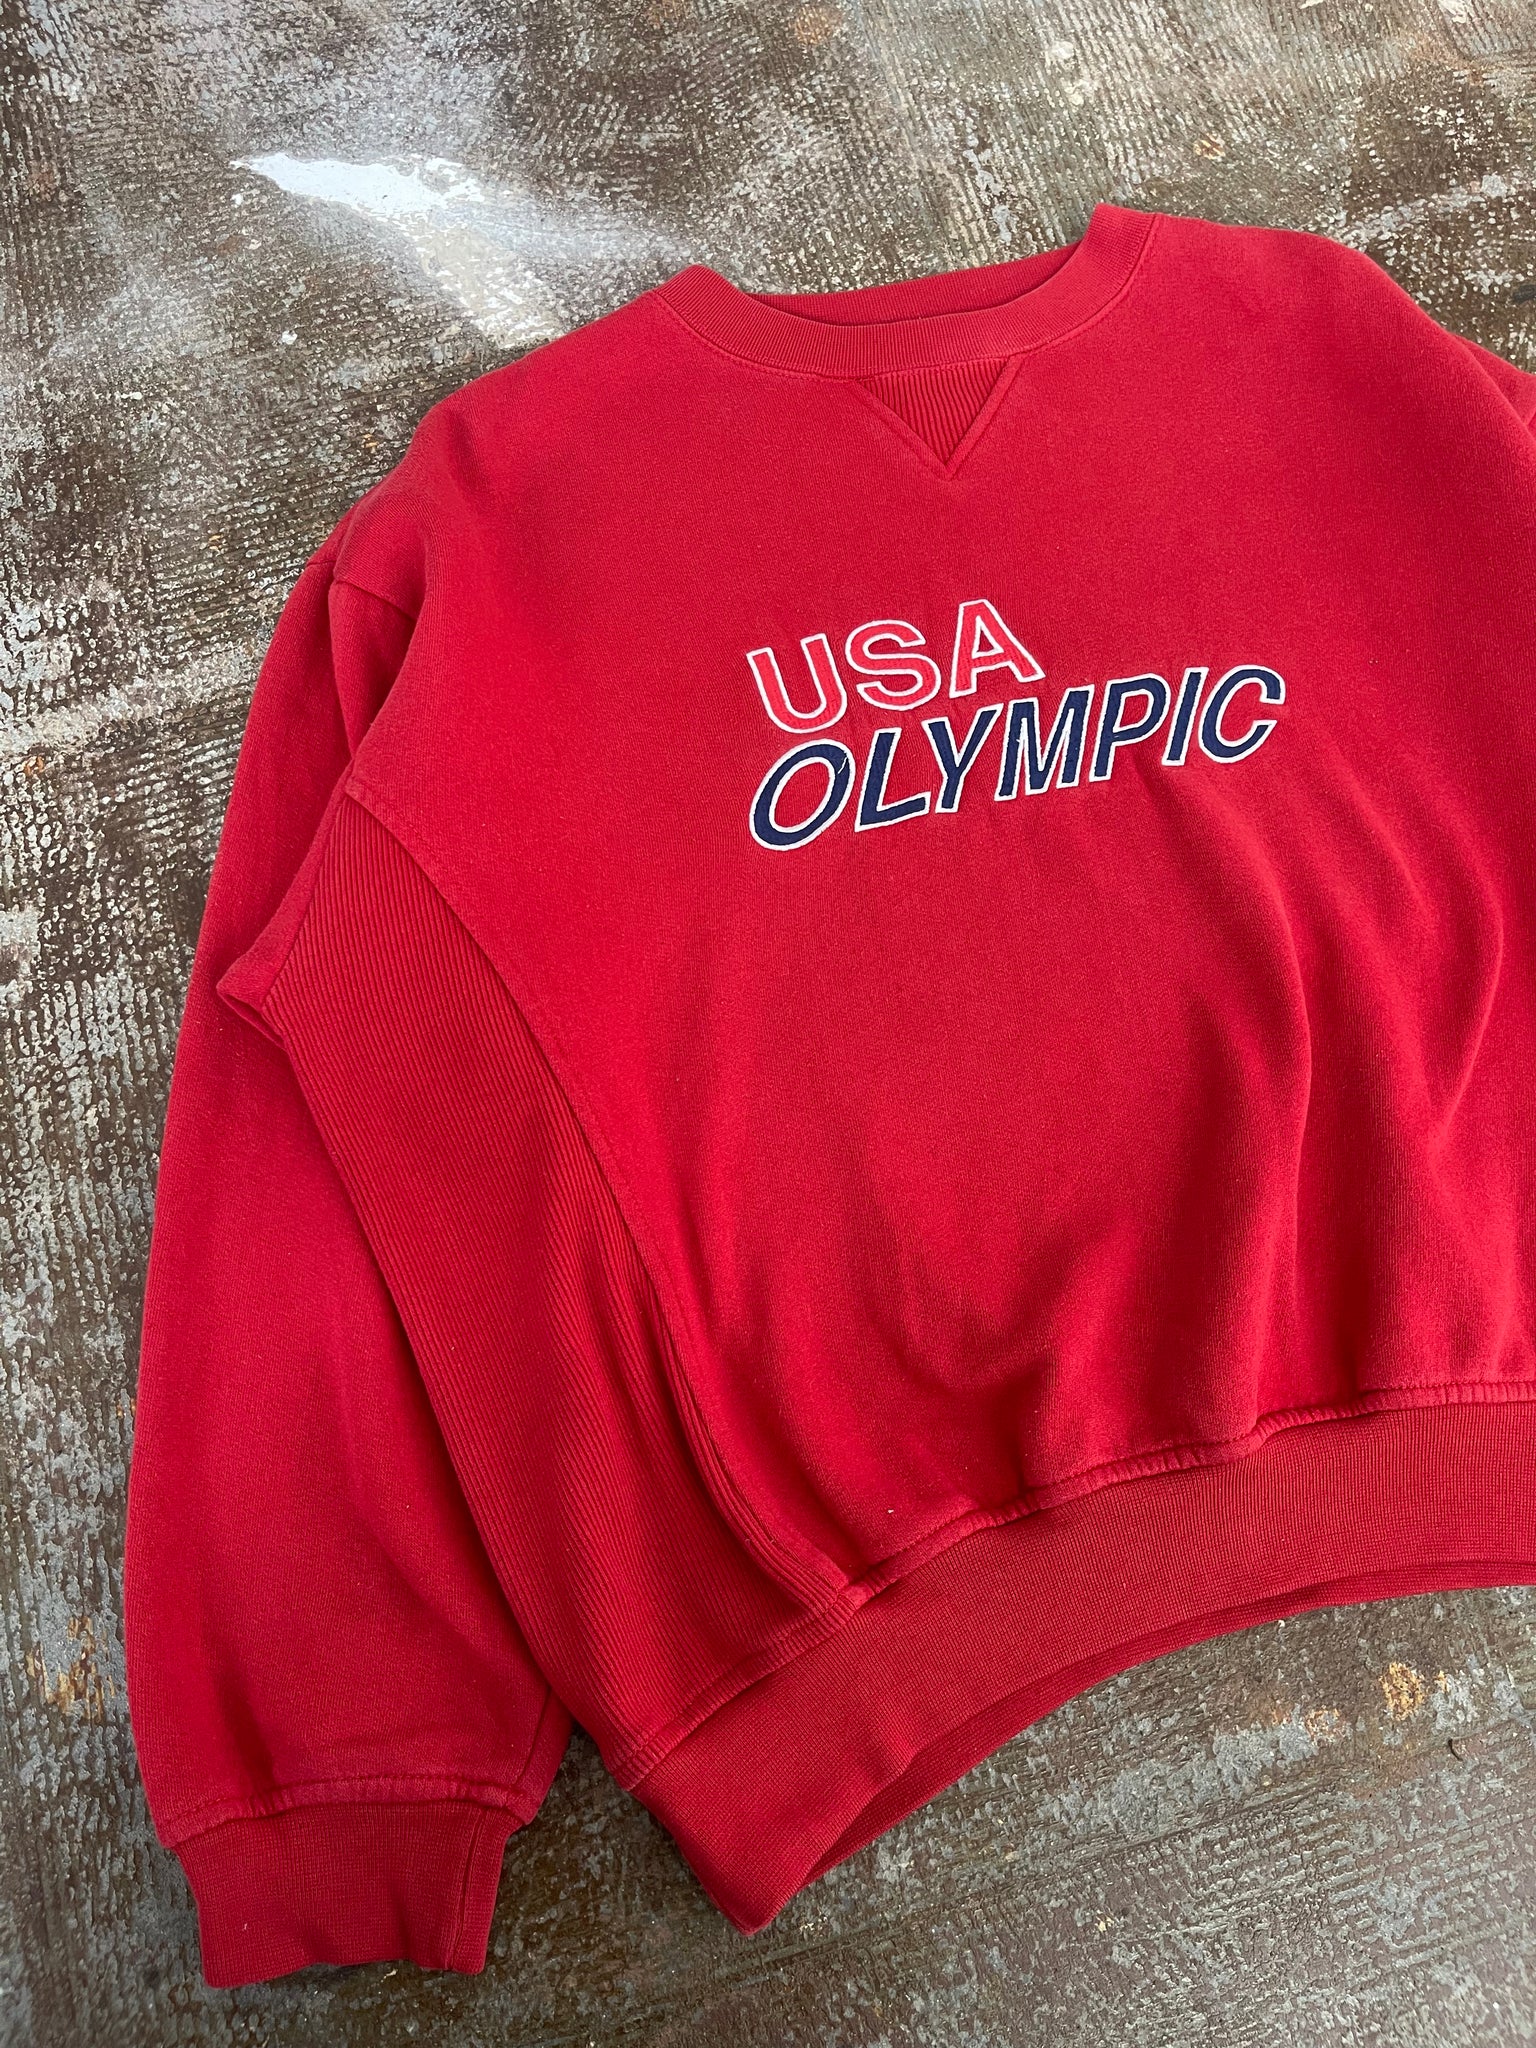 ORIGINAL USA OLYMPIC CREWNECK